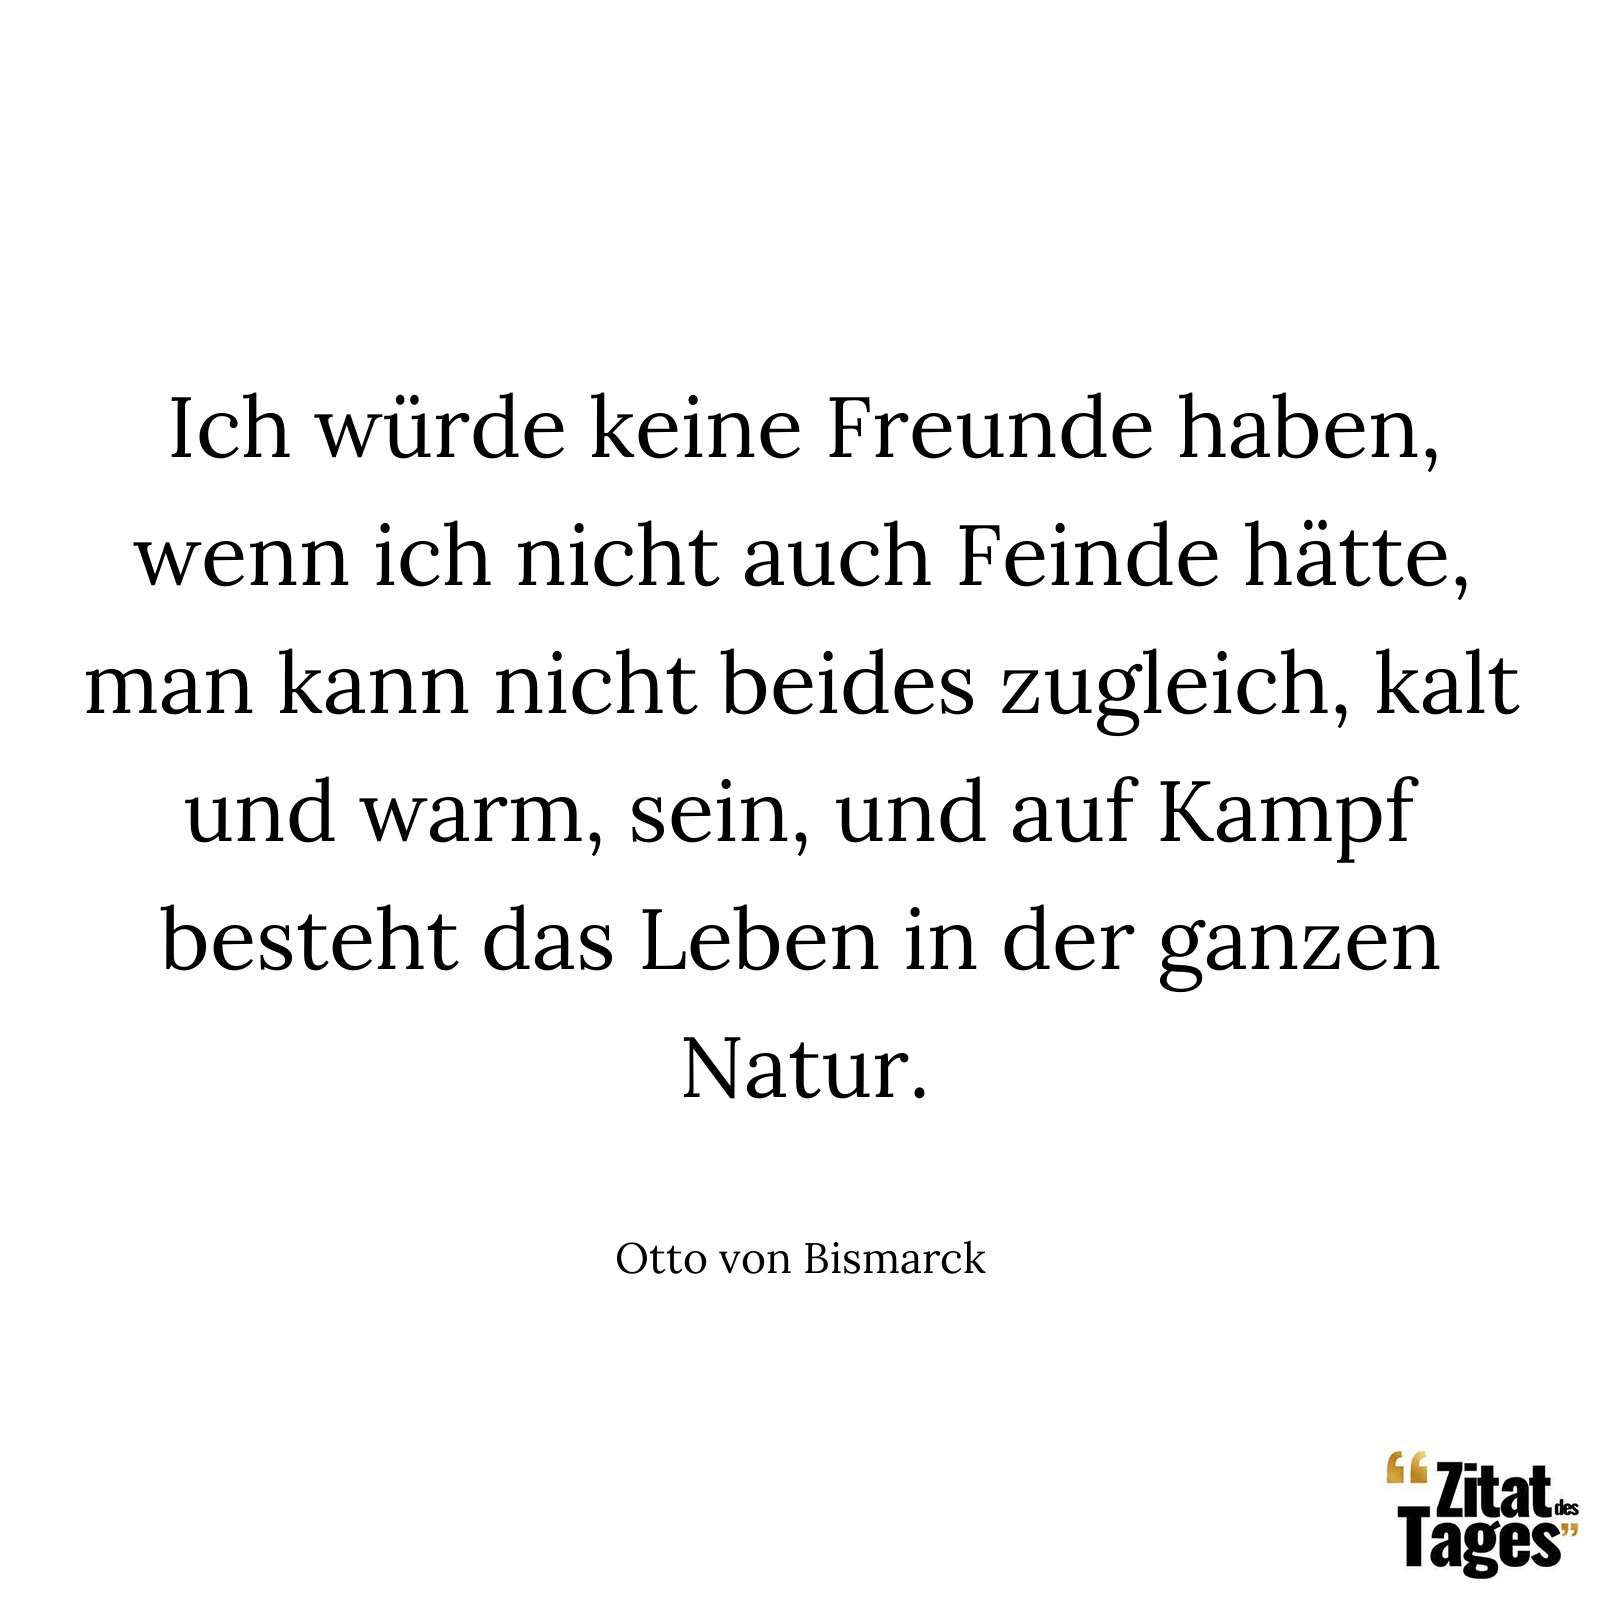 Ich würde keine Freunde haben, wenn ich nicht auch Feinde hätte, man kann nicht beides zugleich, kalt und warm, sein, und auf Kampf besteht das Leben in der ganzen Natur. - Otto von Bismarck